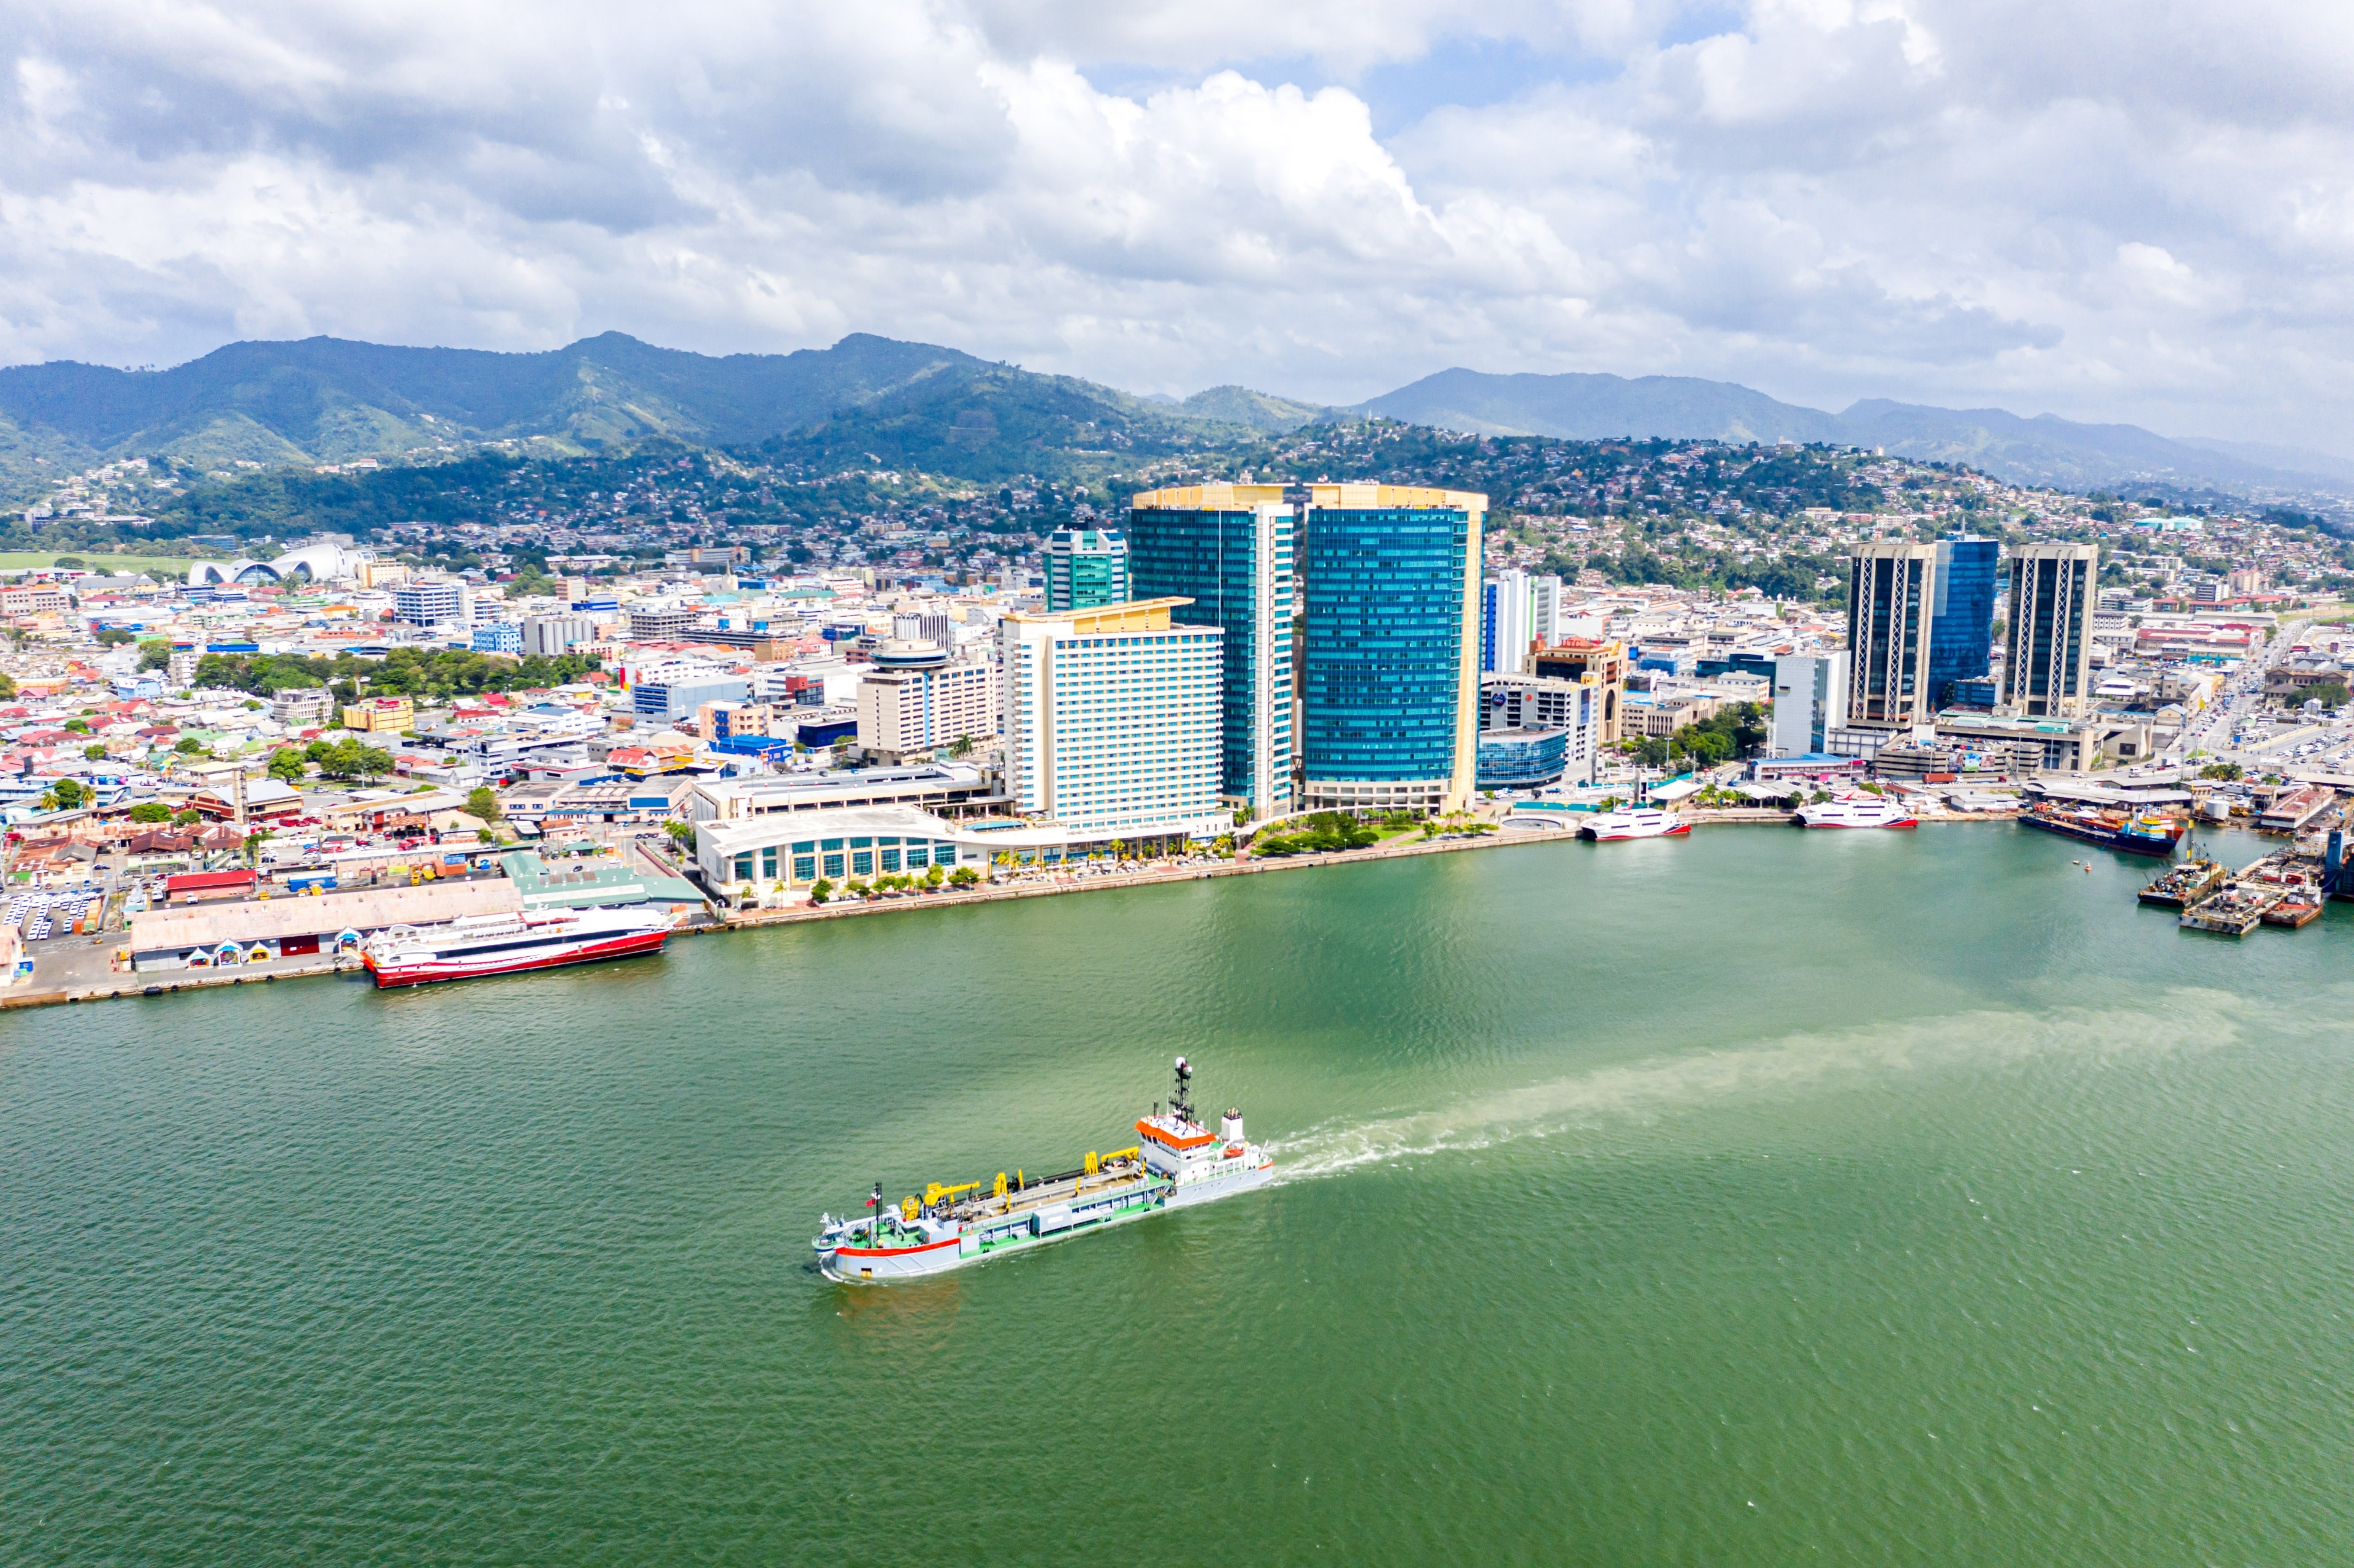 Port of Spain, San Juan-Laventille, Trinidad and Tobago